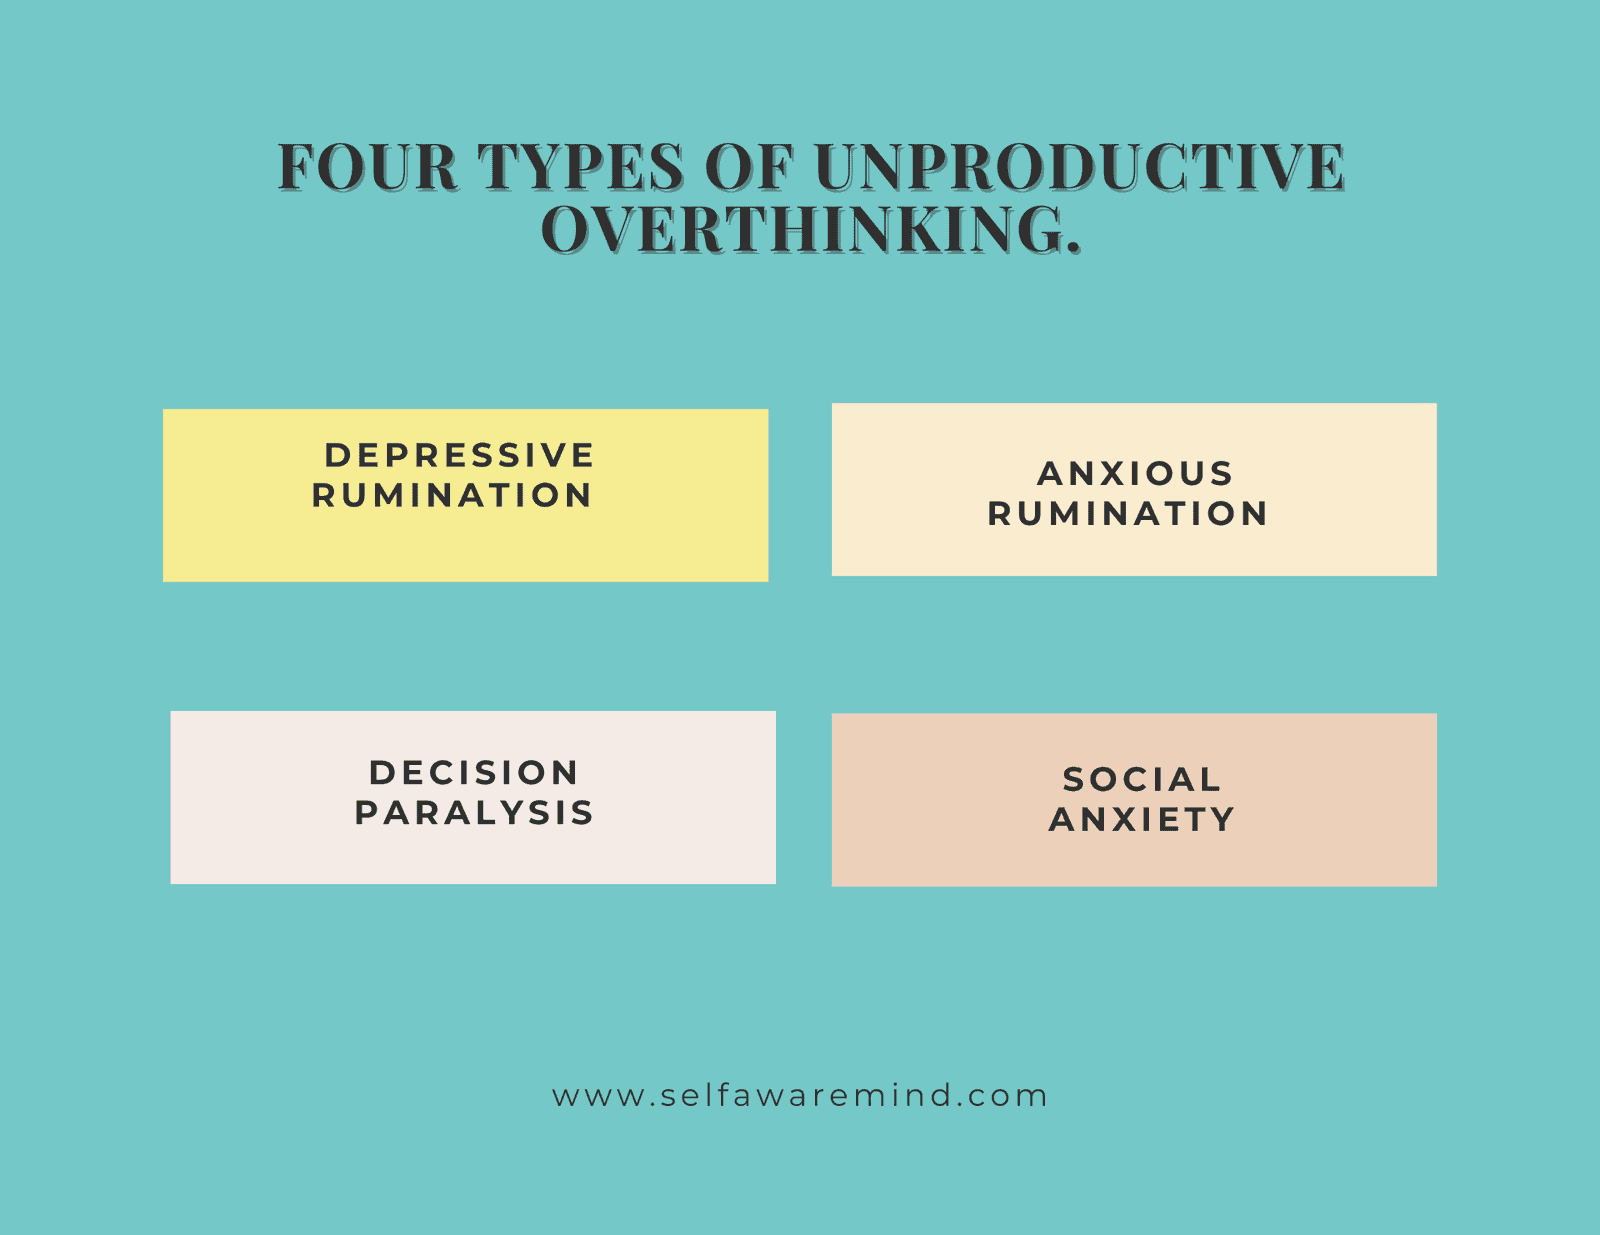 4 types of unproductive overthinking.